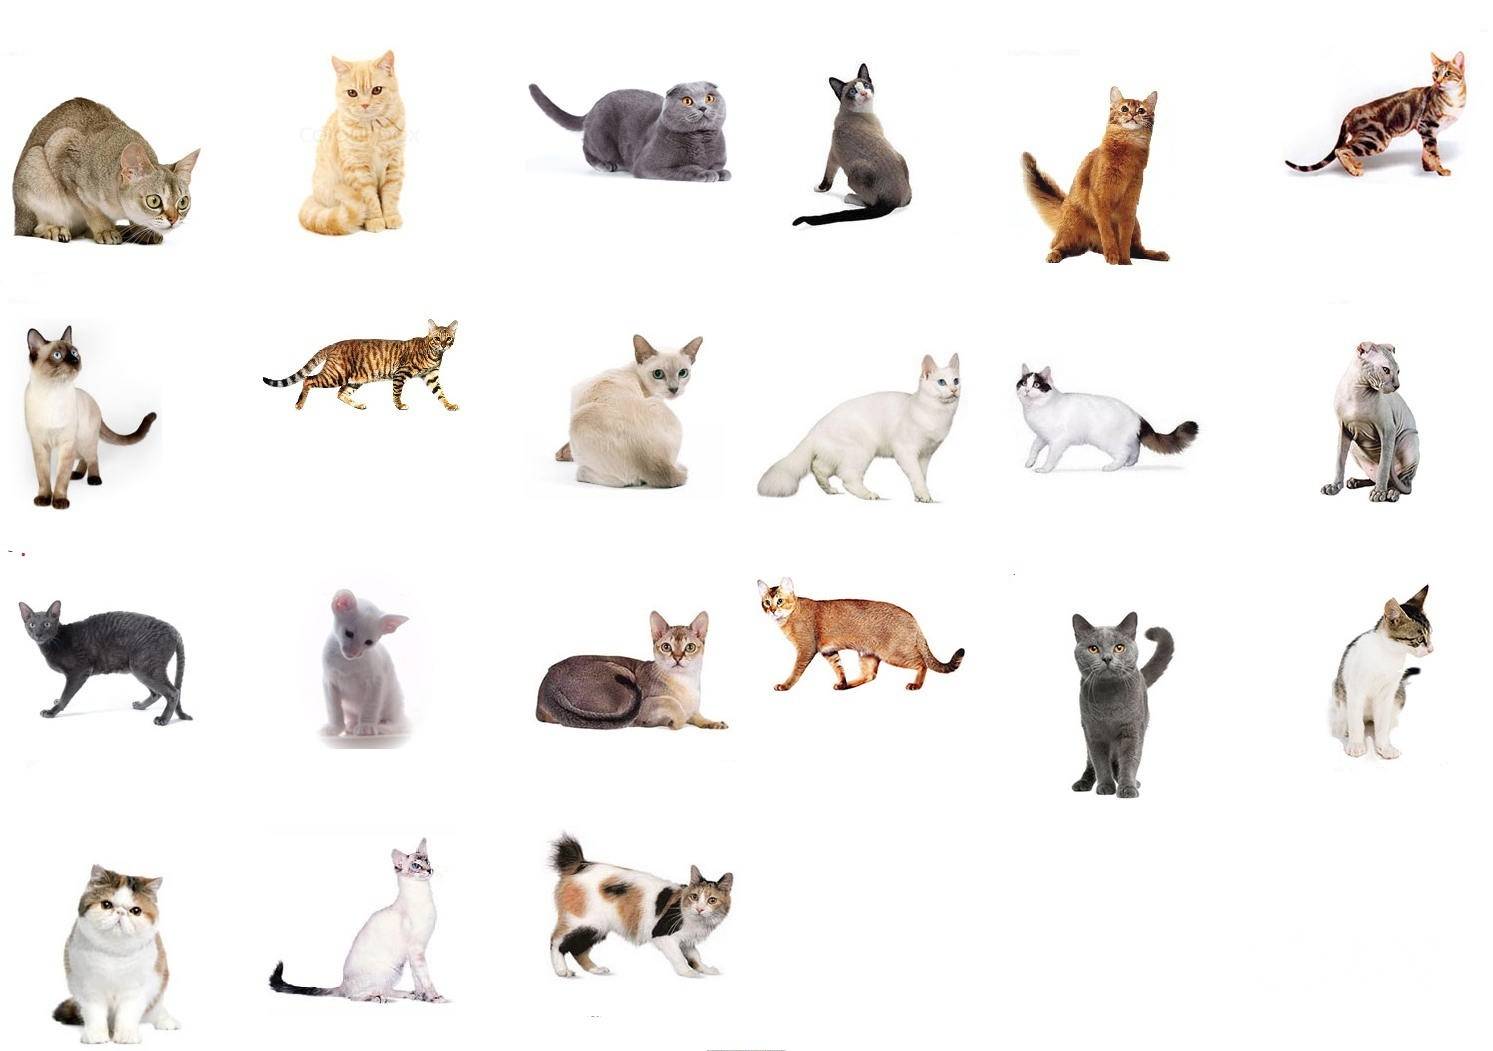 Какие породы кошек бывают: название редких котов, классификация по длине и типу шерсти, окрасу, виду ушей и хвоста, фотографии